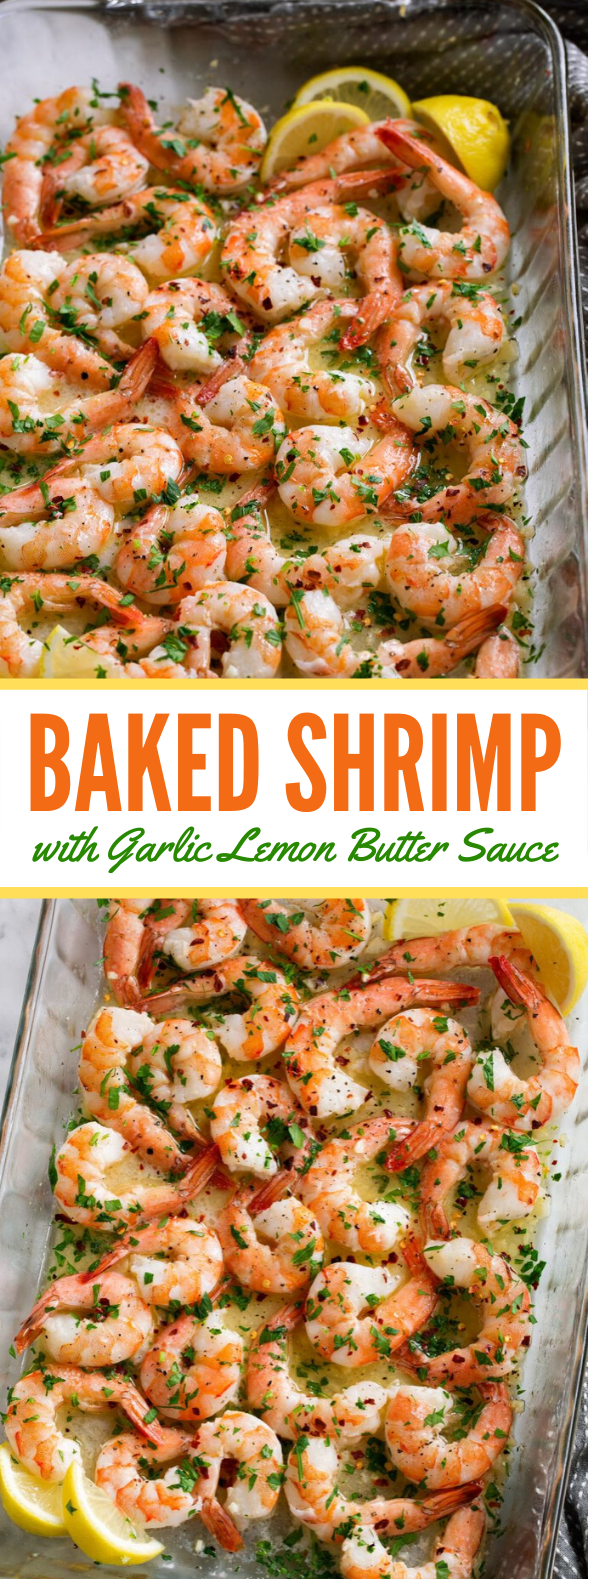 Baked Shrimp (with Garlic Lemon Butter Sauce) #dinner #lunch